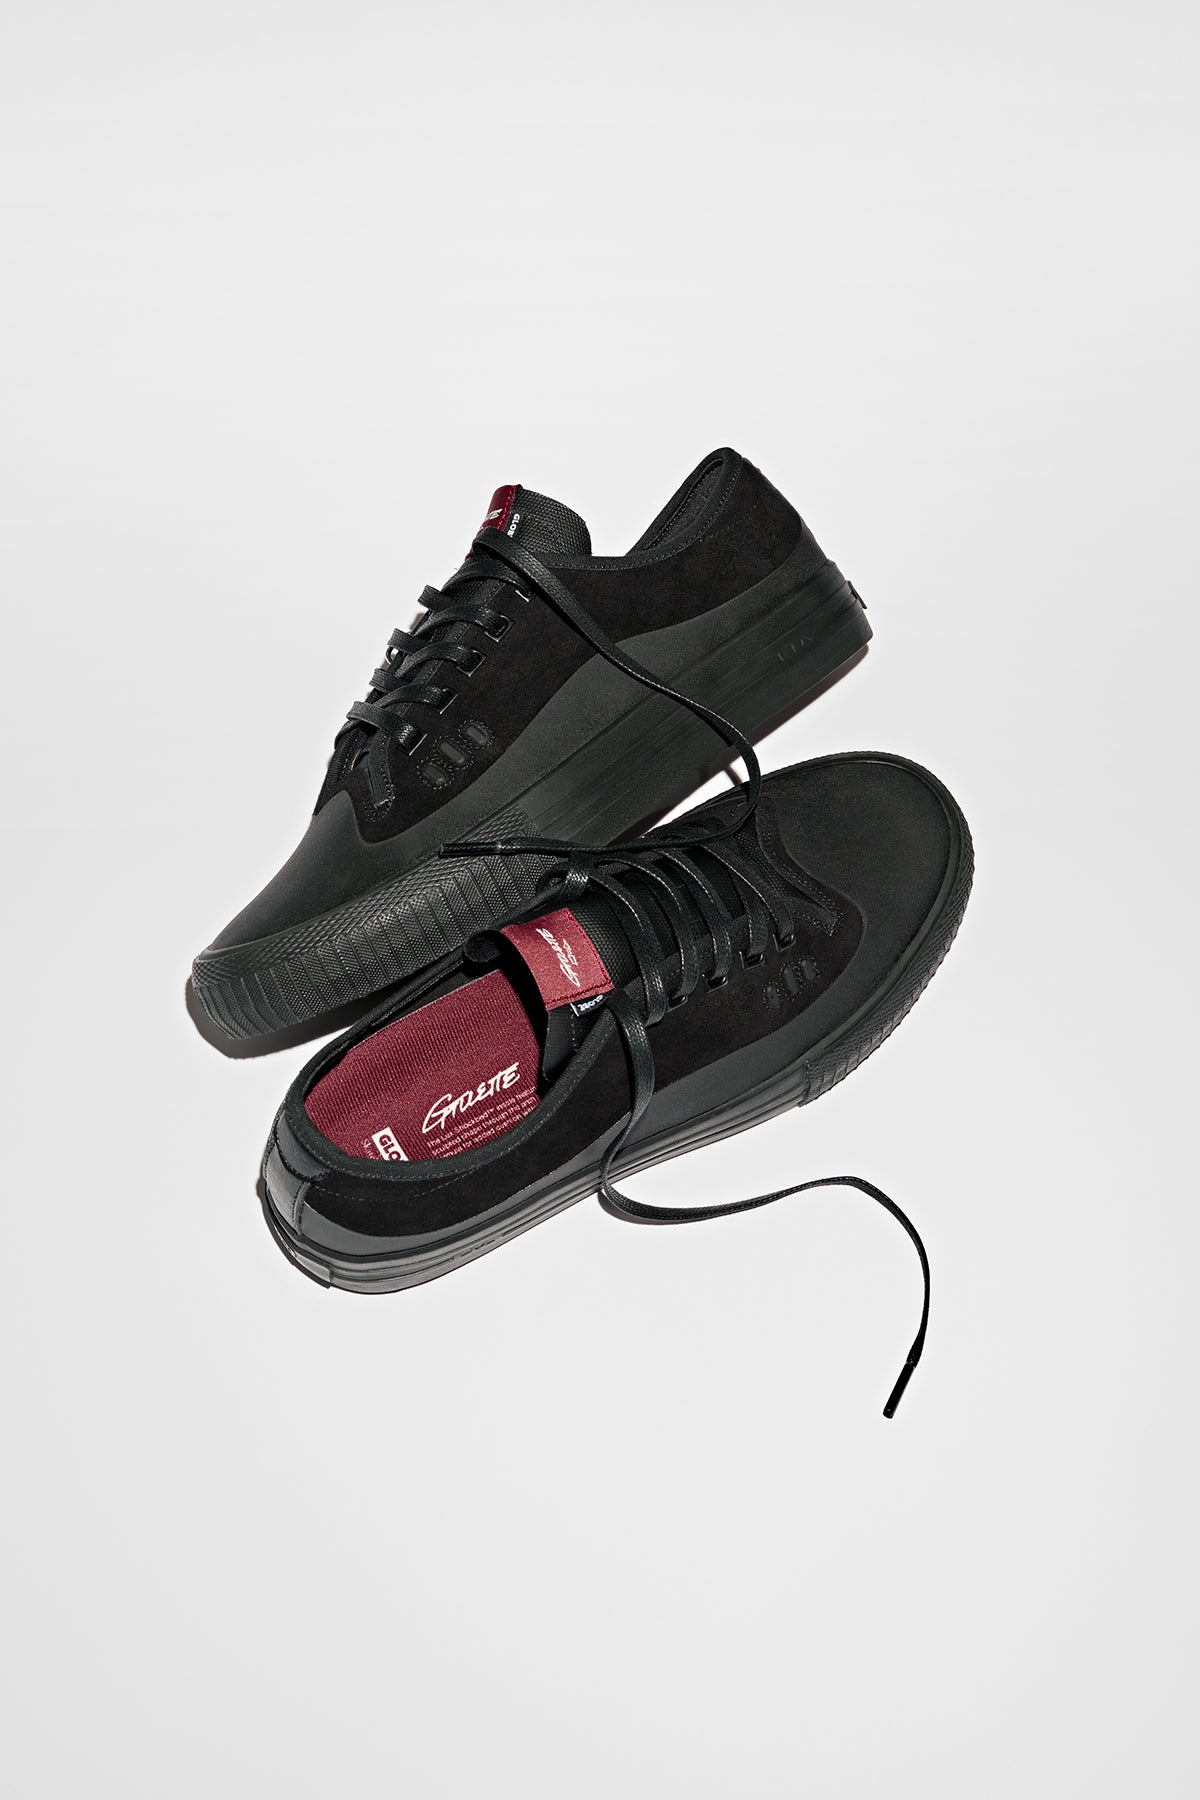 Globe - Gillette - Black/Black Suede - Skate Shoes